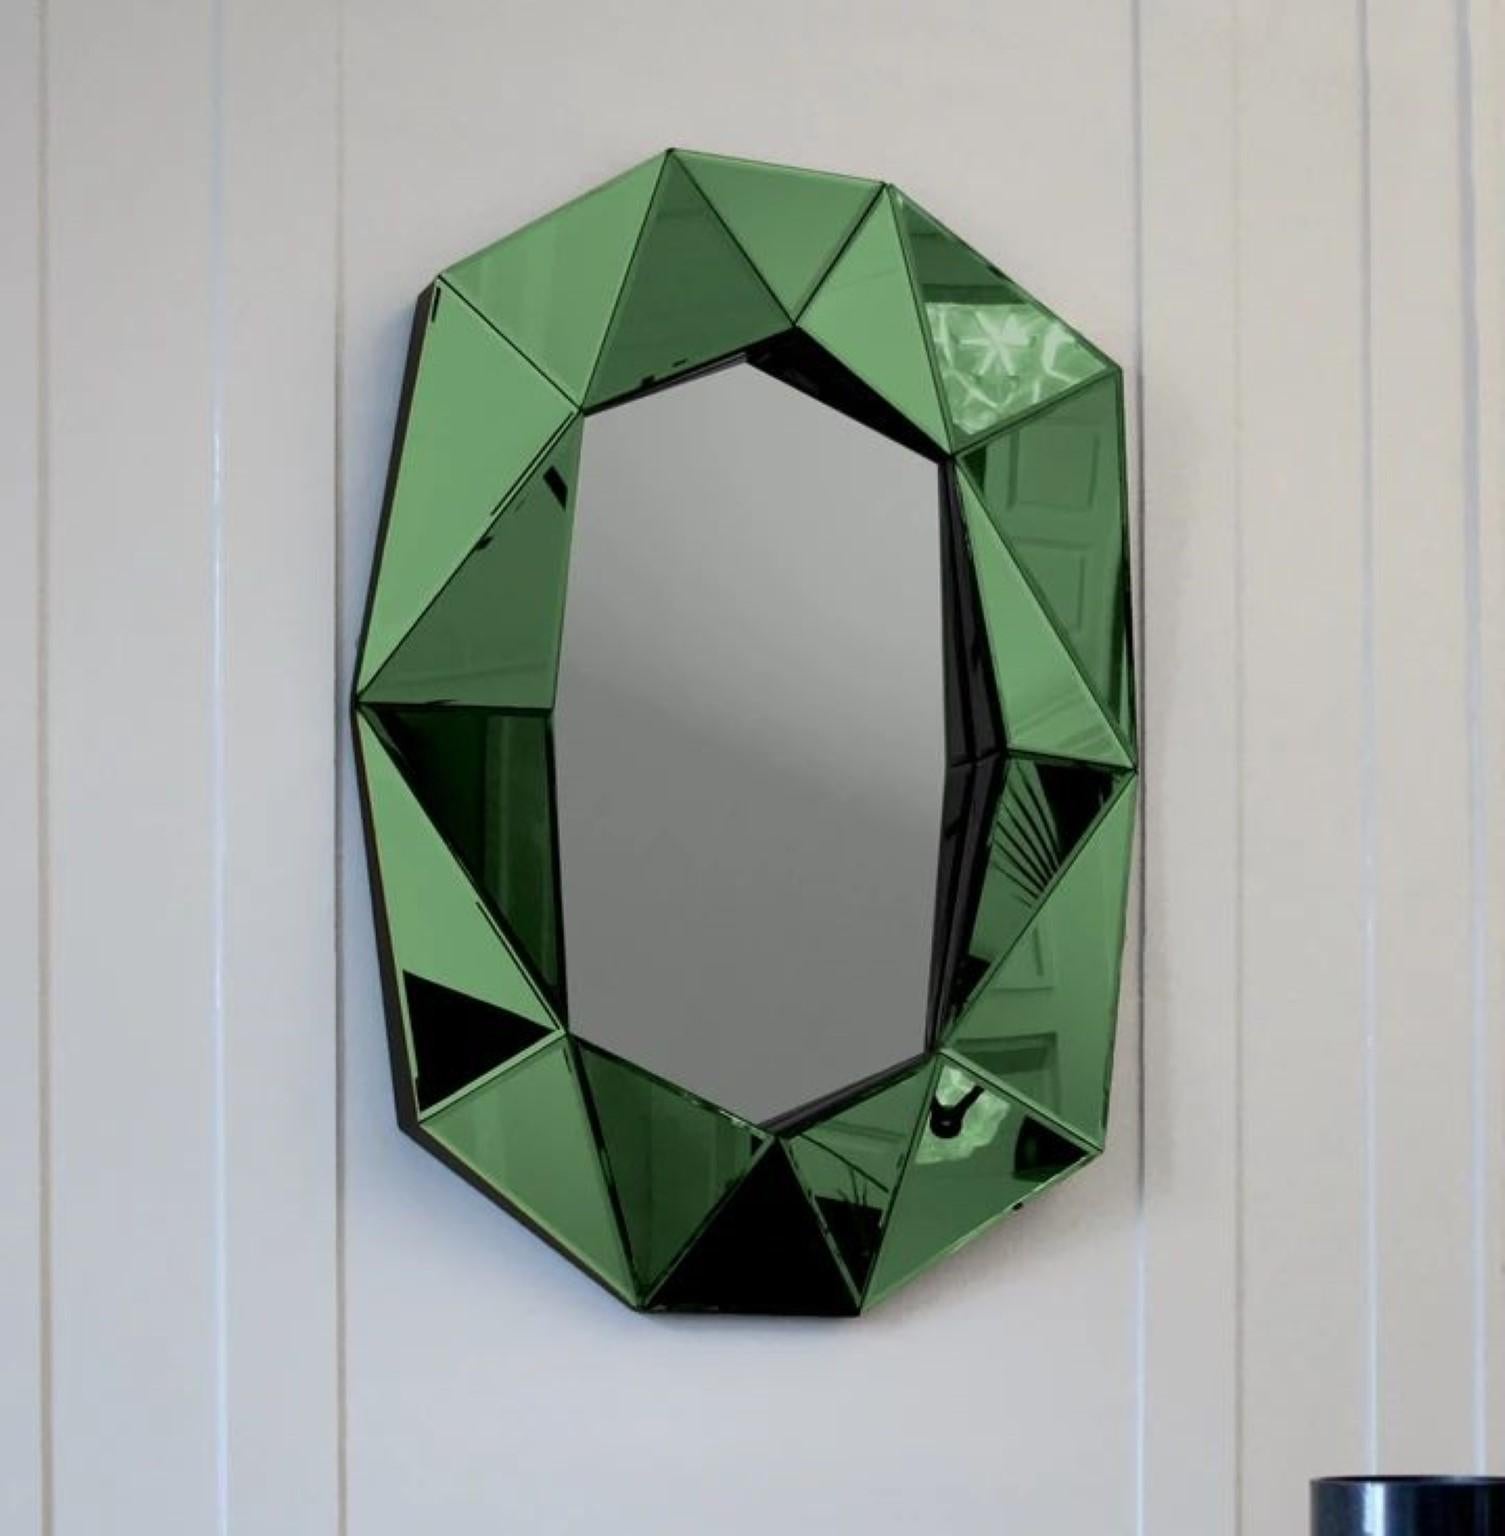 Diamant großer Spiegel Smaragd
Abmessungen: B 72 x T 6,2 x H 100 cm
MATERIAL: 4 mm facettierter Spiegel auf schwarz lackiertem MDF
Gewicht: 12,8 kg

Der große Spiegel Diamond stellt eine perfekte Kombination aus Funktion und Kunst dar. Dieser